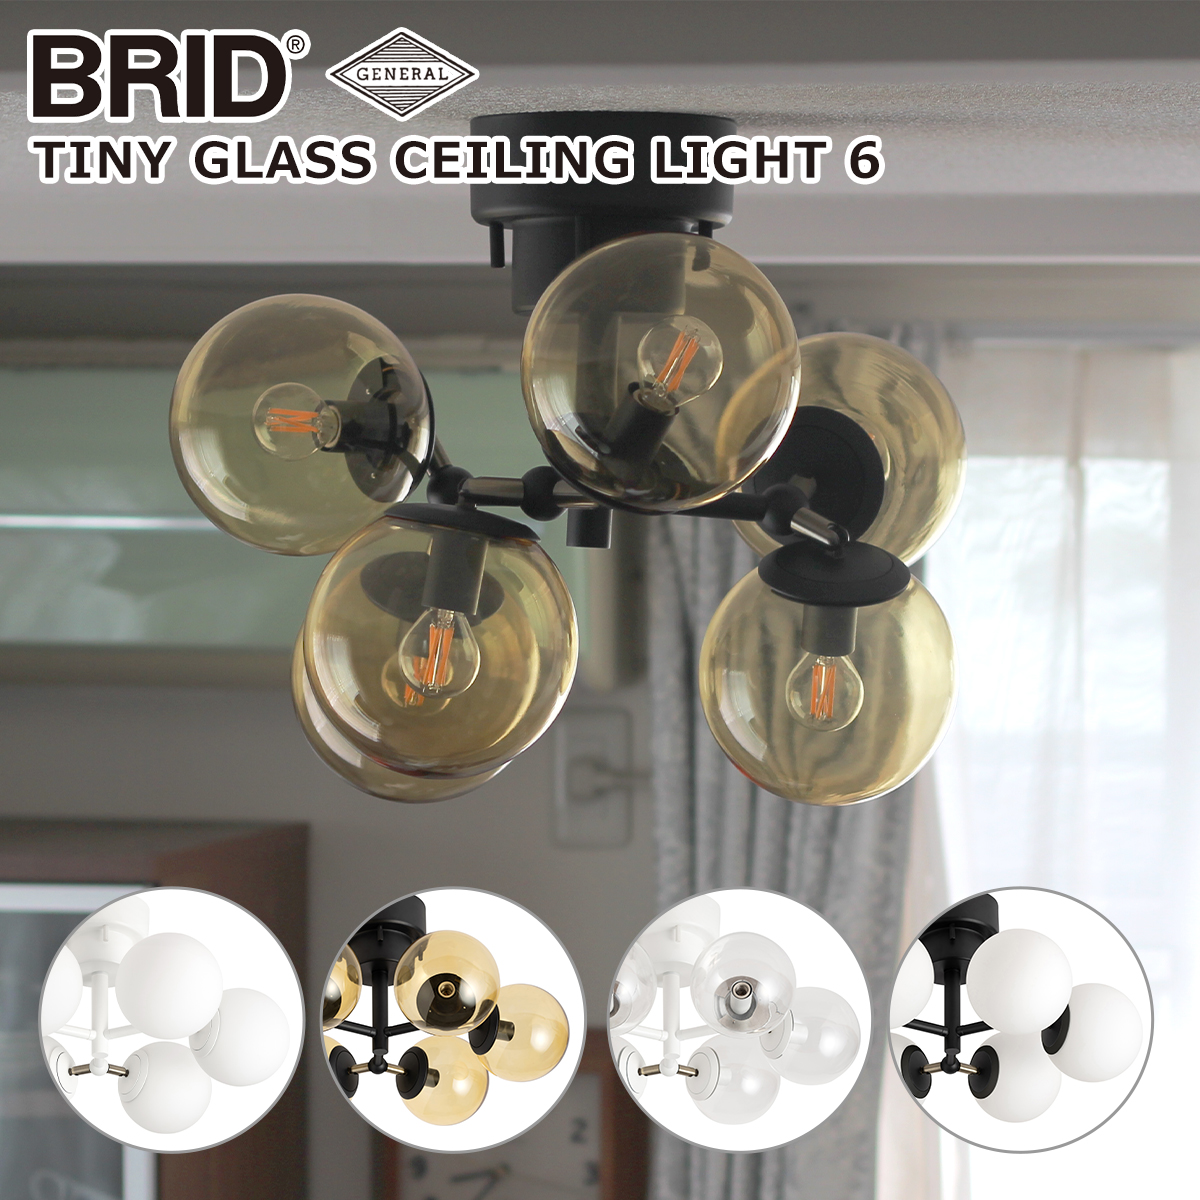 ブリッド BRID タイニー グラス シーリングライト 6灯 3366（電球なし）TINY GLASS CEILING LIGHT 6 GENERAL ランプシェード